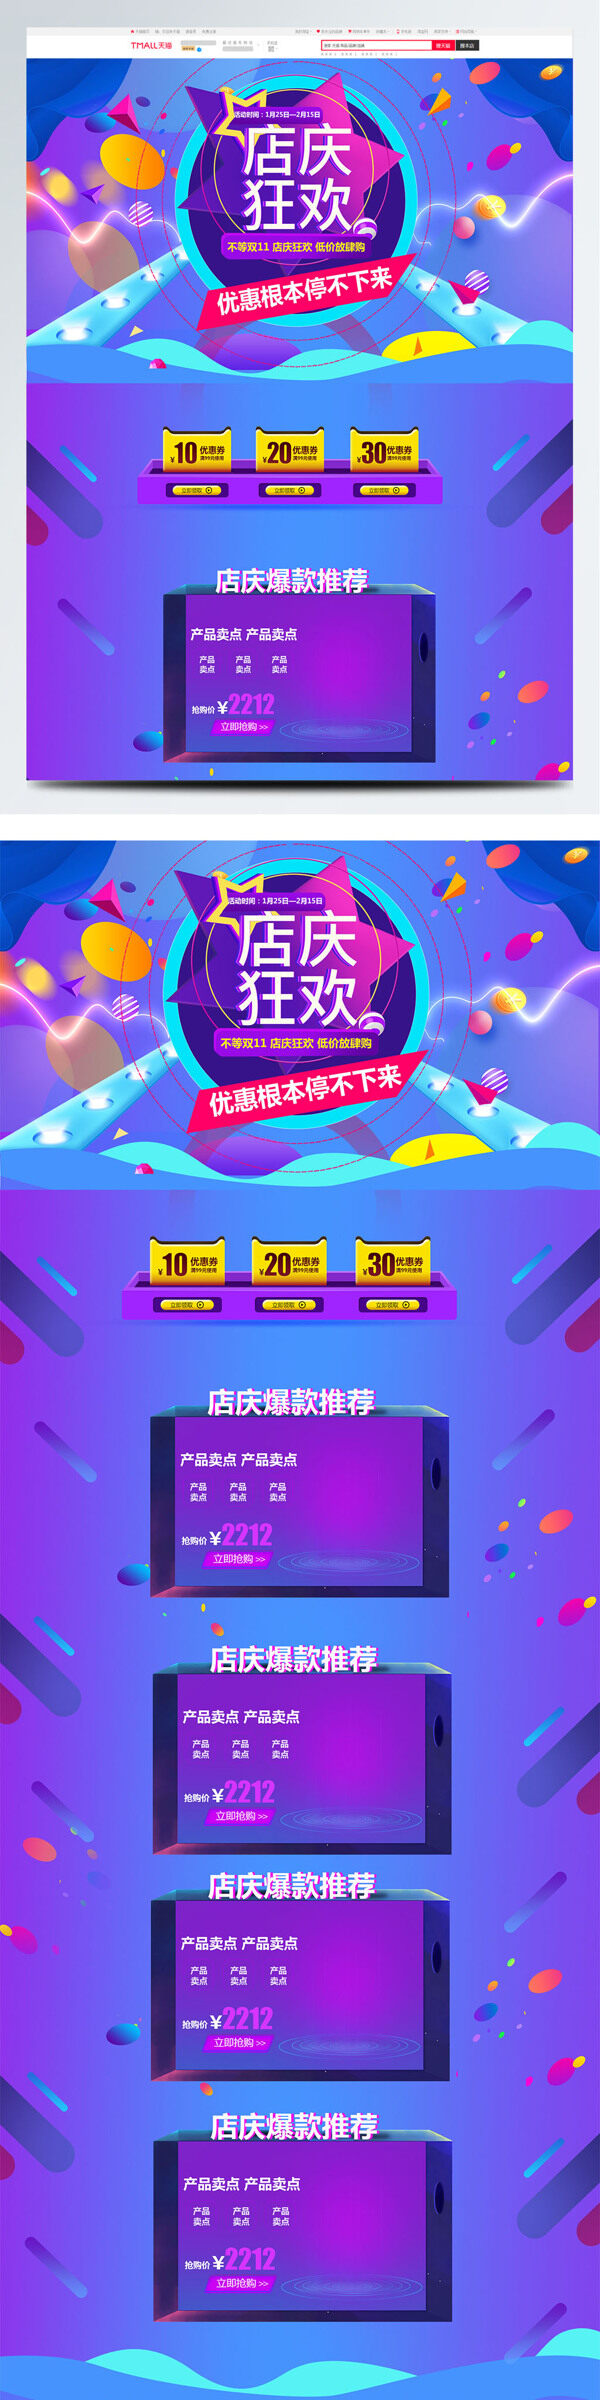 紫色大气电商促销周年店庆生活电器首页模版